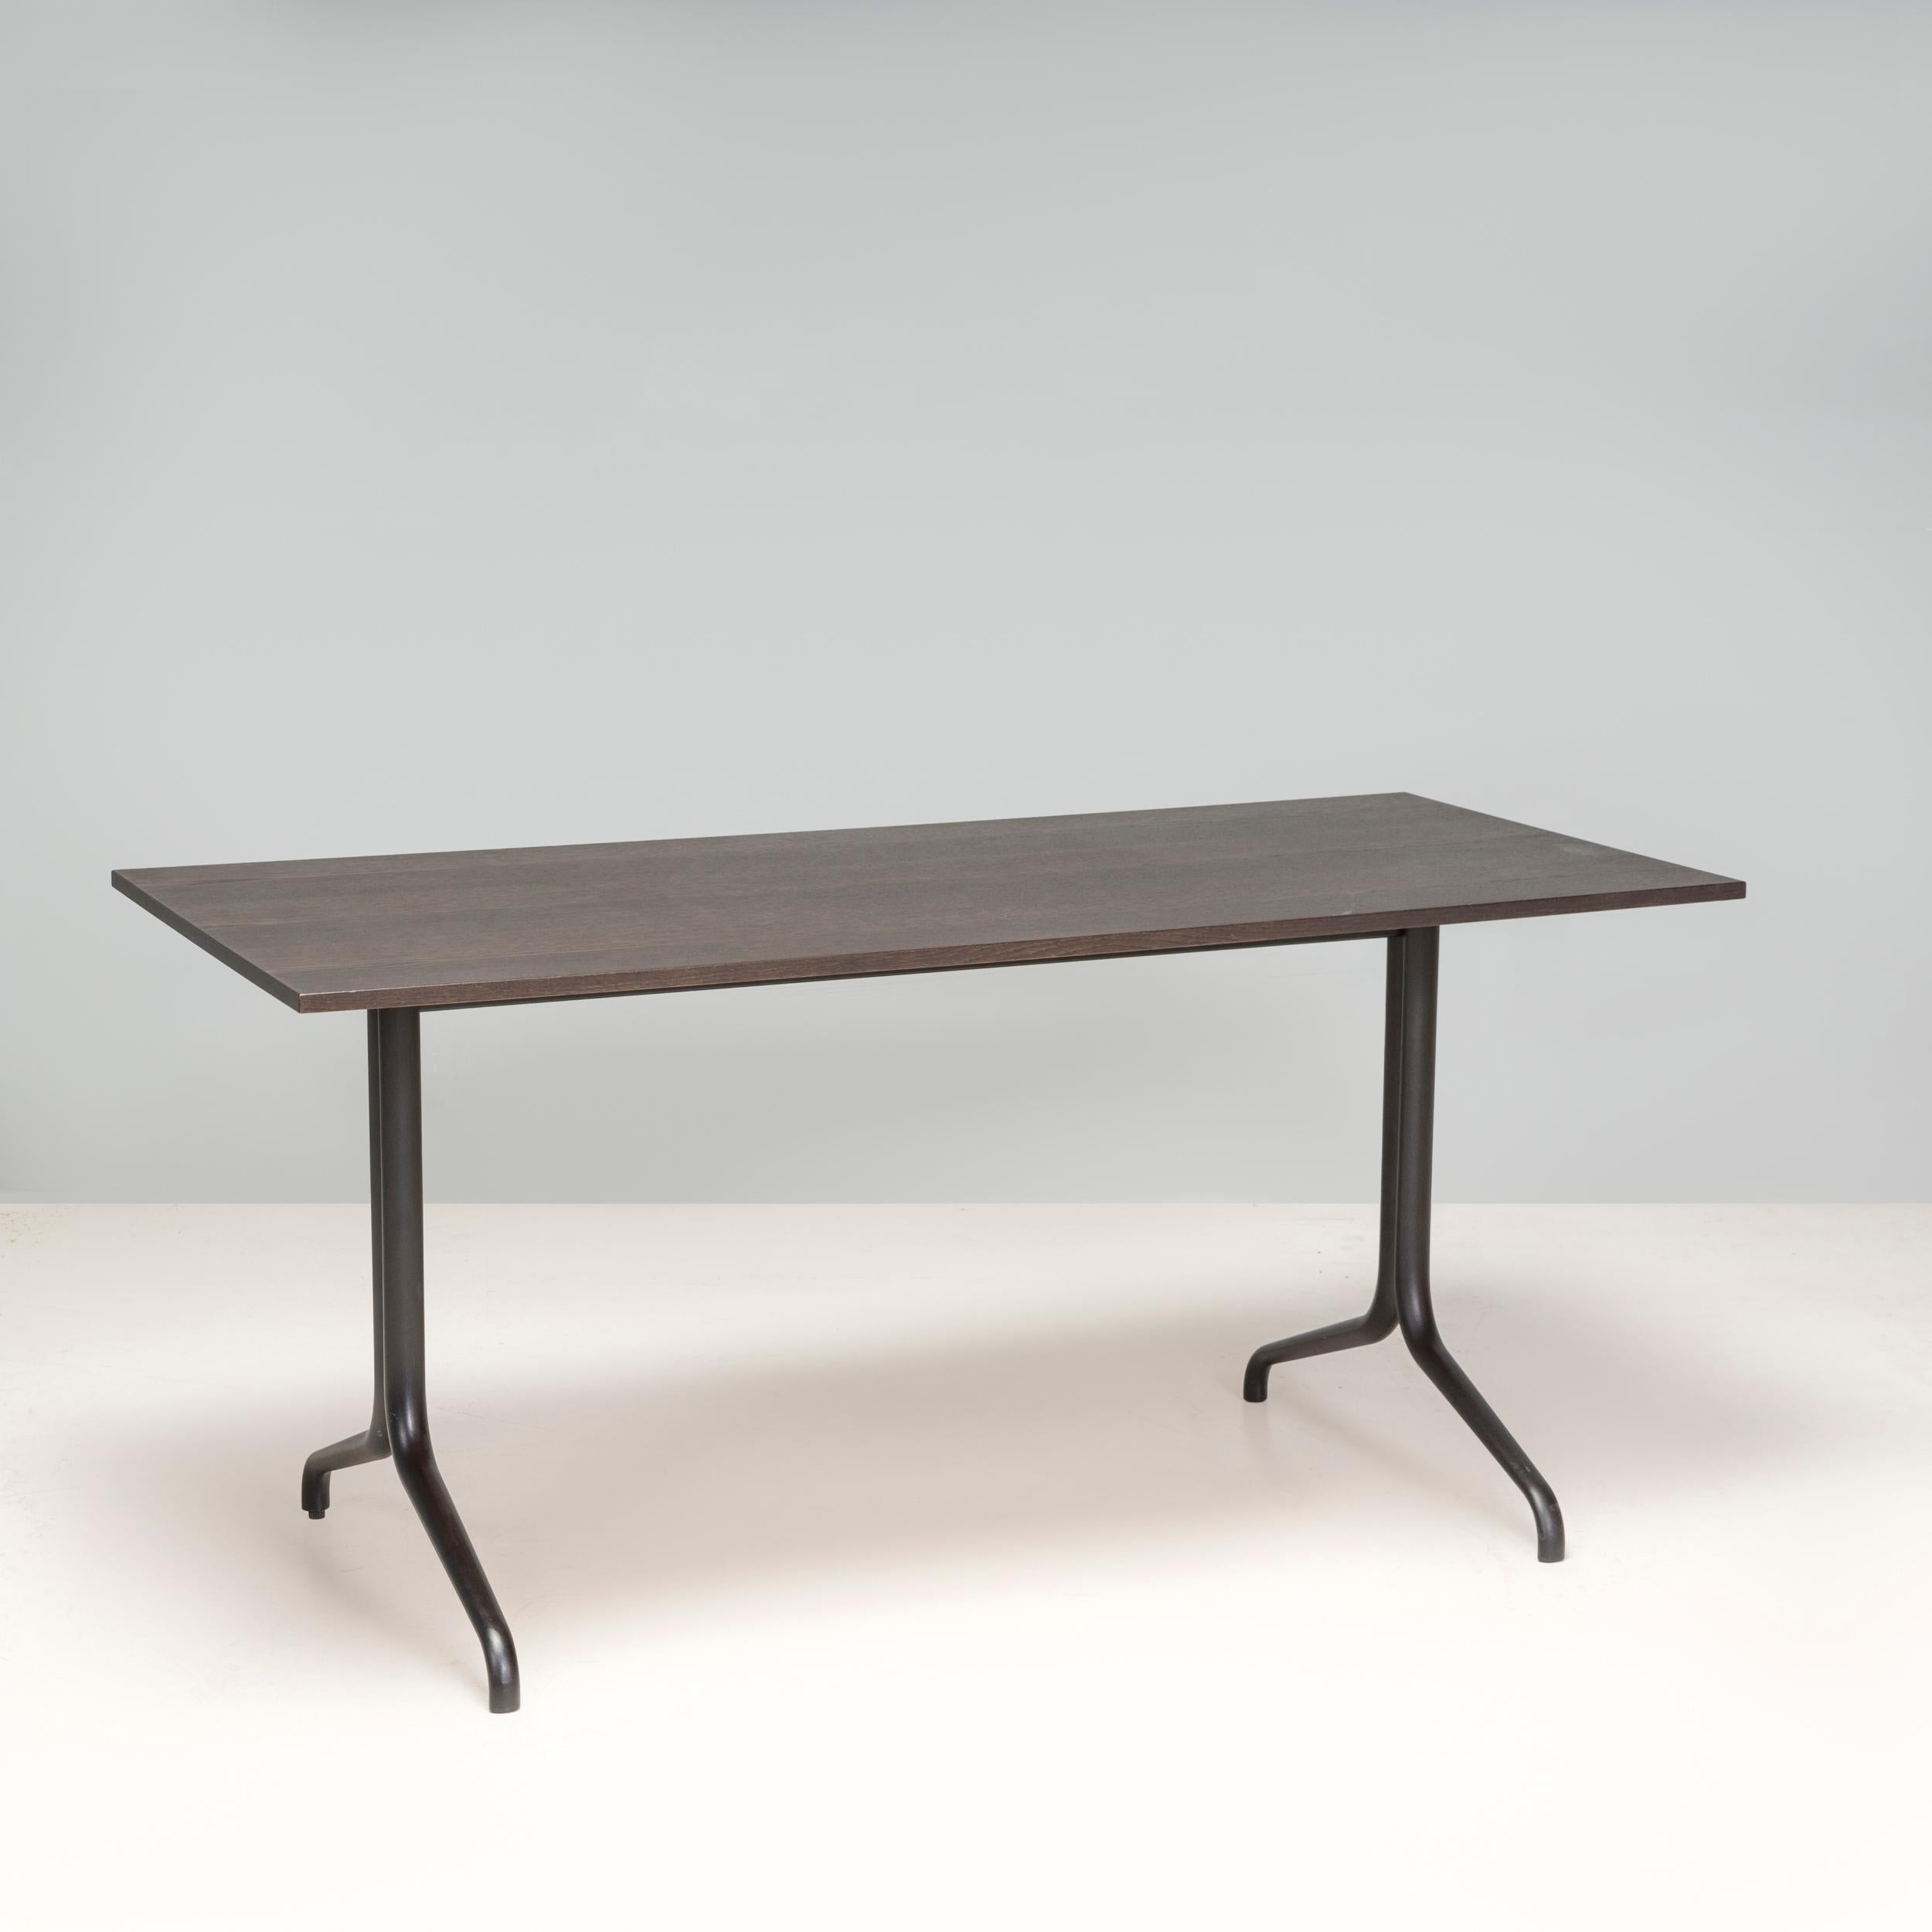 Initialement conçue en 2015 par Ronan & Erwan Bouroullec pour Vitra, la table à manger Belleville donne à la table de bistrot classique une mise à jour moderne. 

Dotée d'un plateau rectangulaire en placage de chêne foncé, la table repose sur des